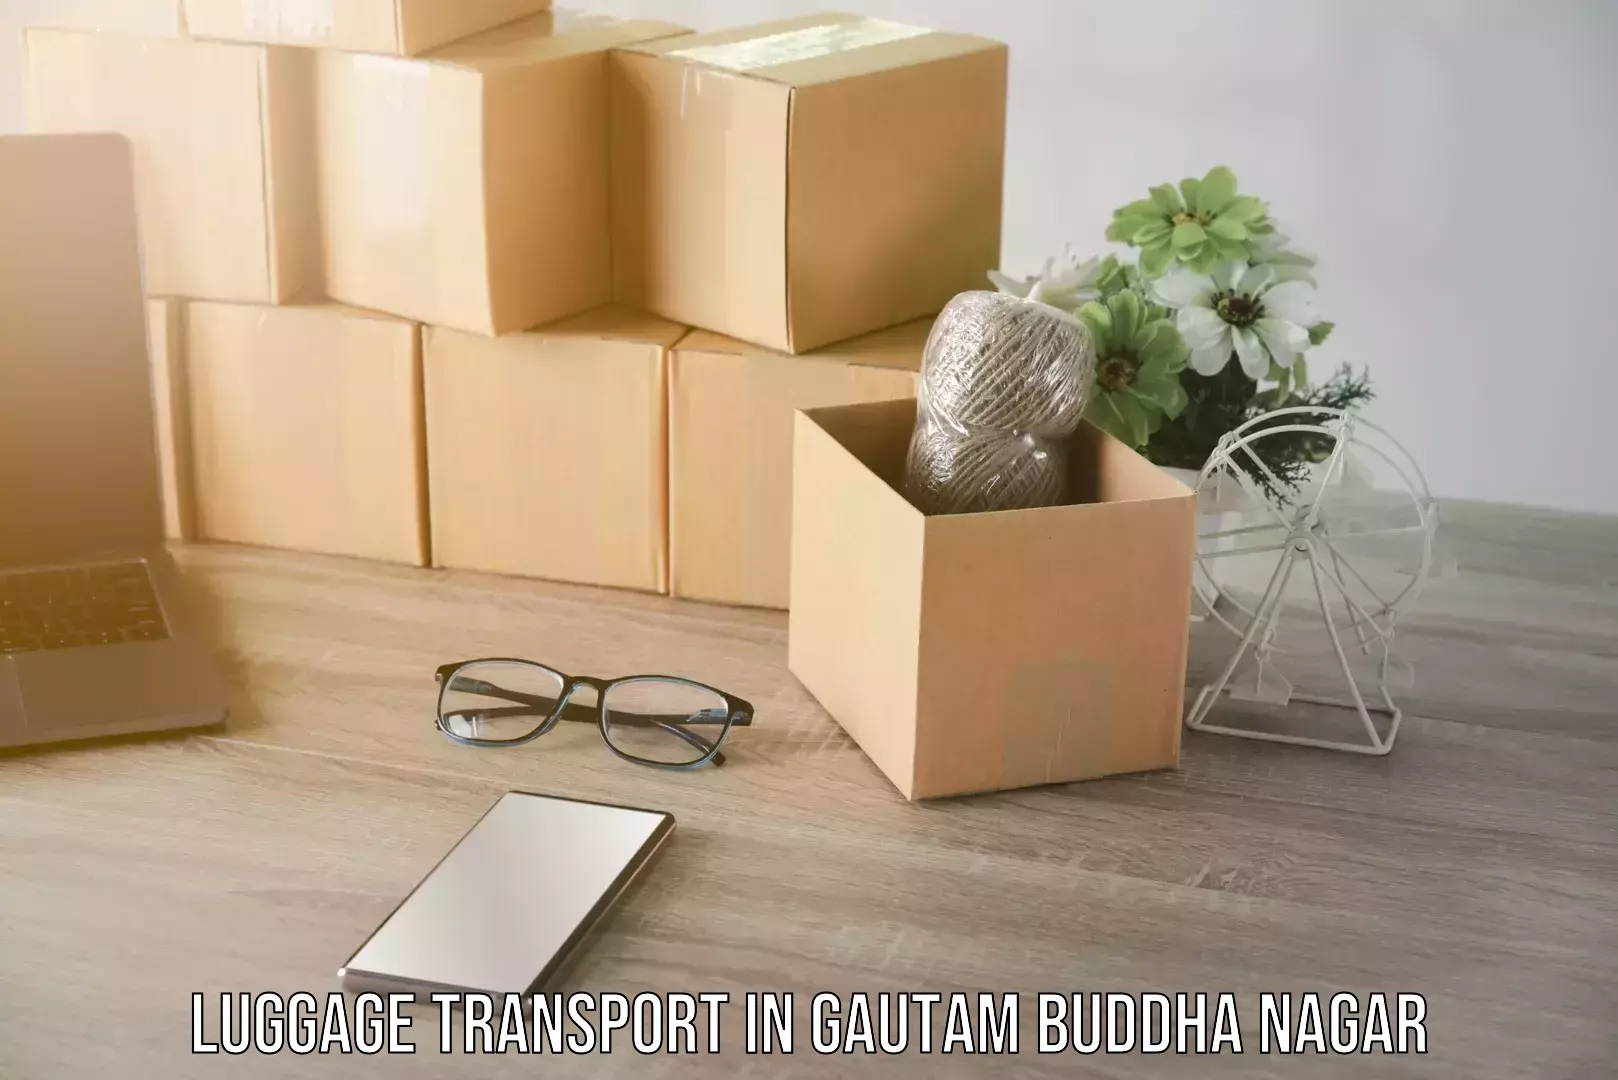 Luggage delivery estimate in Gautam Buddha Nagar